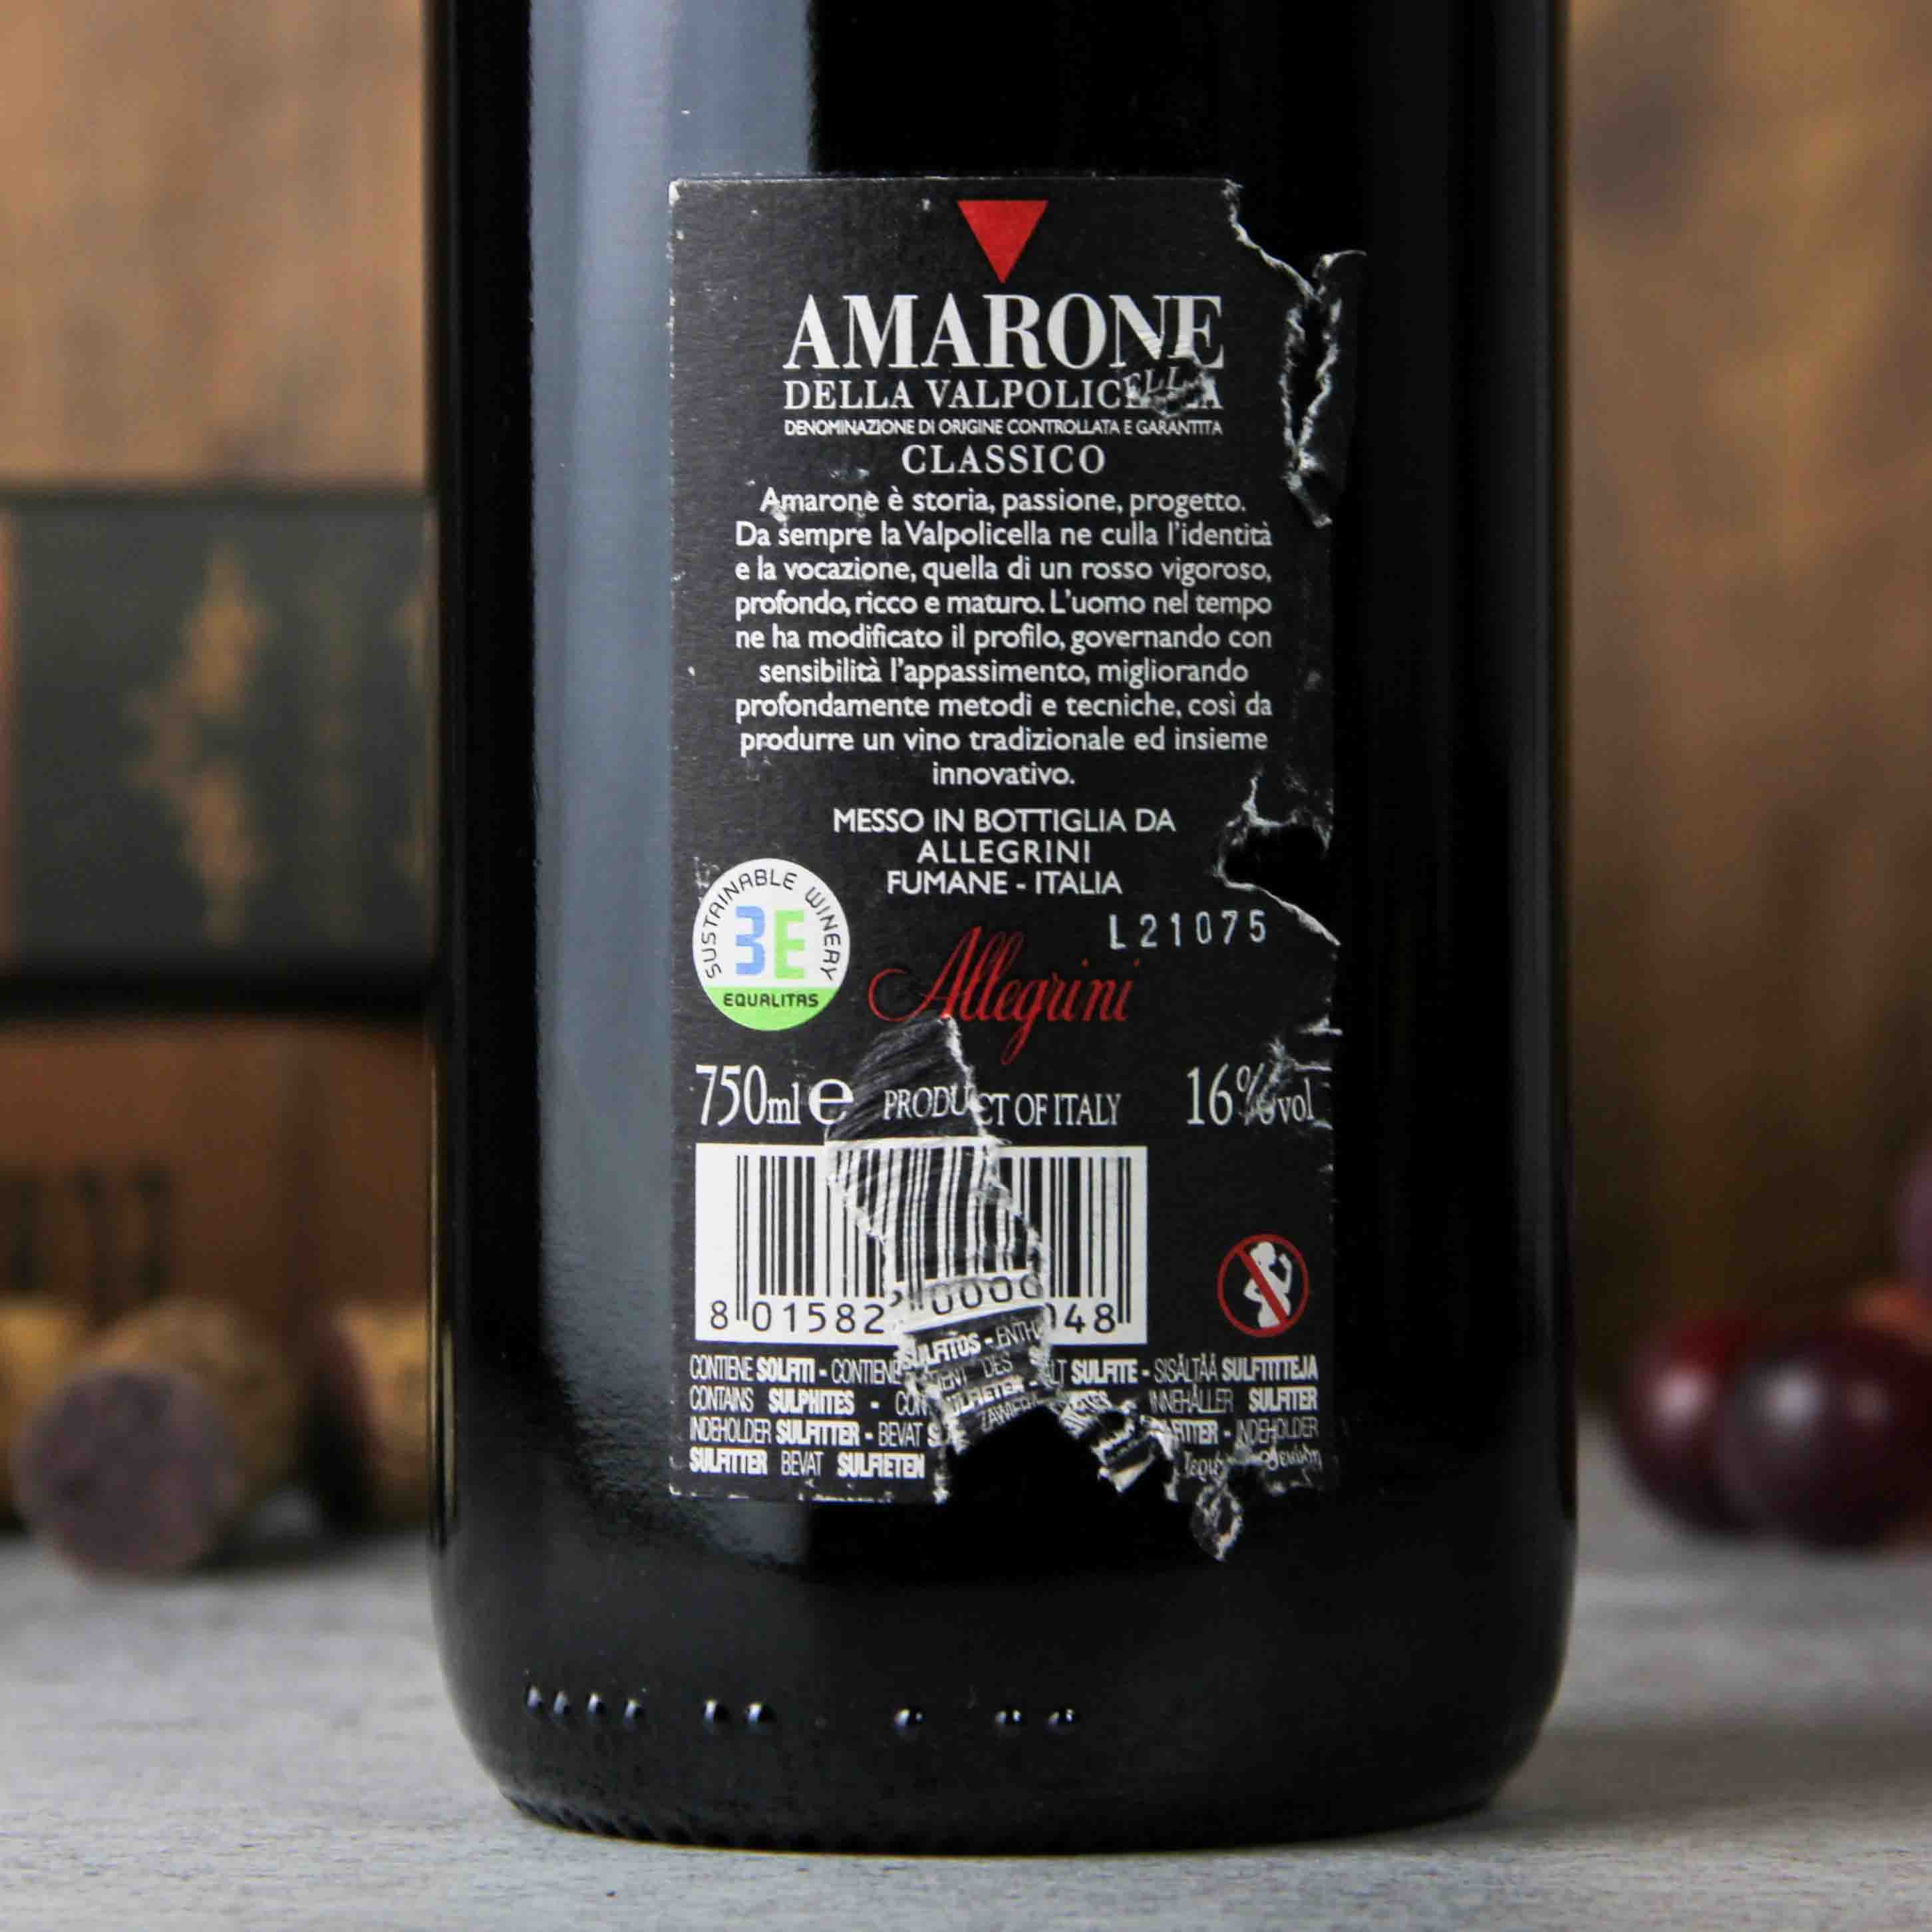 意大利艾格尼Allegrini酒庄经典阿玛罗尼瓦尔波利塞拉葡萄酒